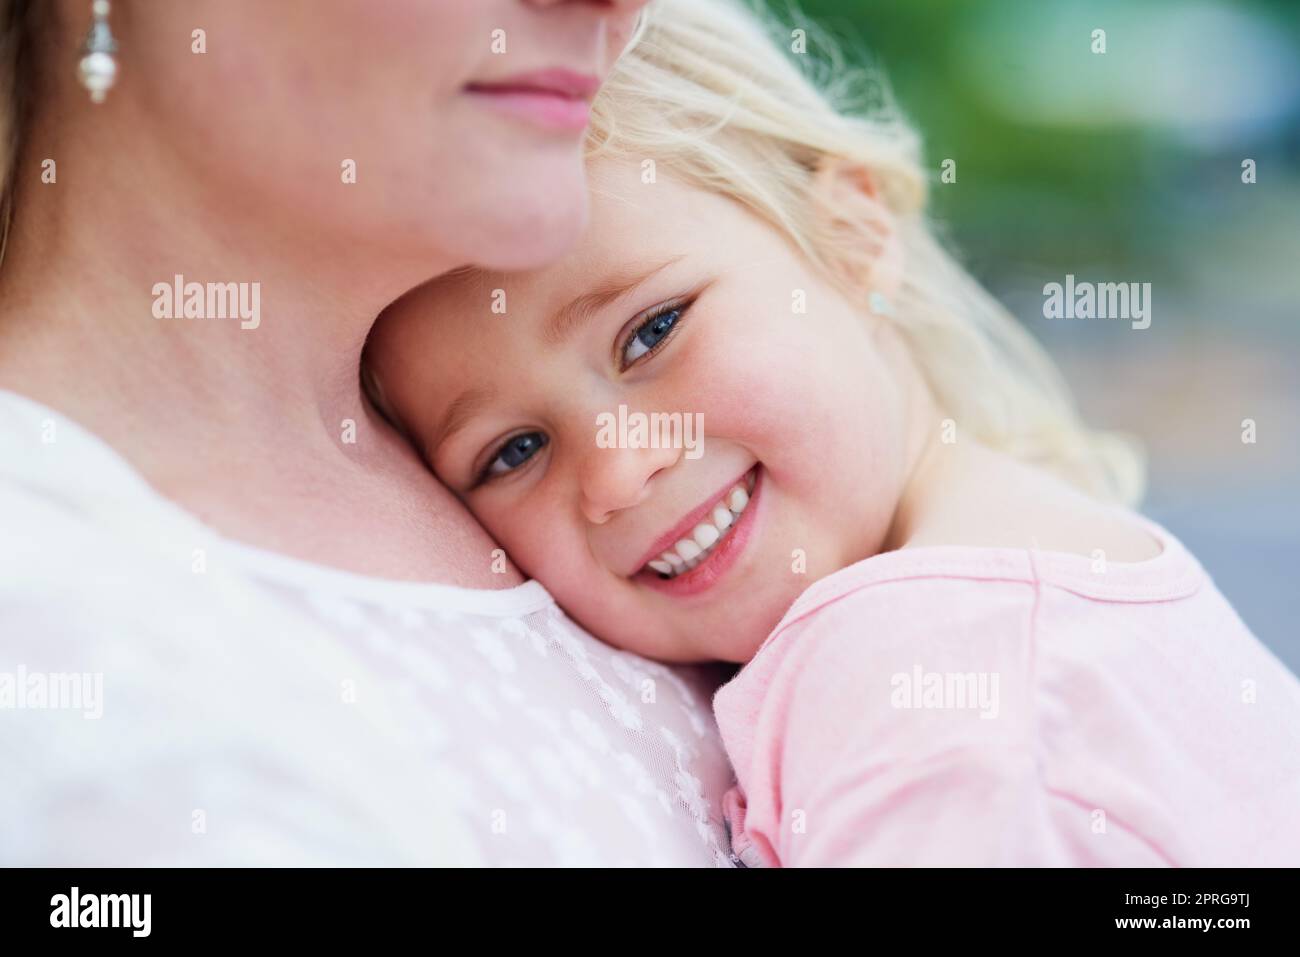 Meine Mummys die beste. Porträt eines niedlichen kleinen Mädchens, das von ihrer Mutter draußen gehalten wird. Stockfoto